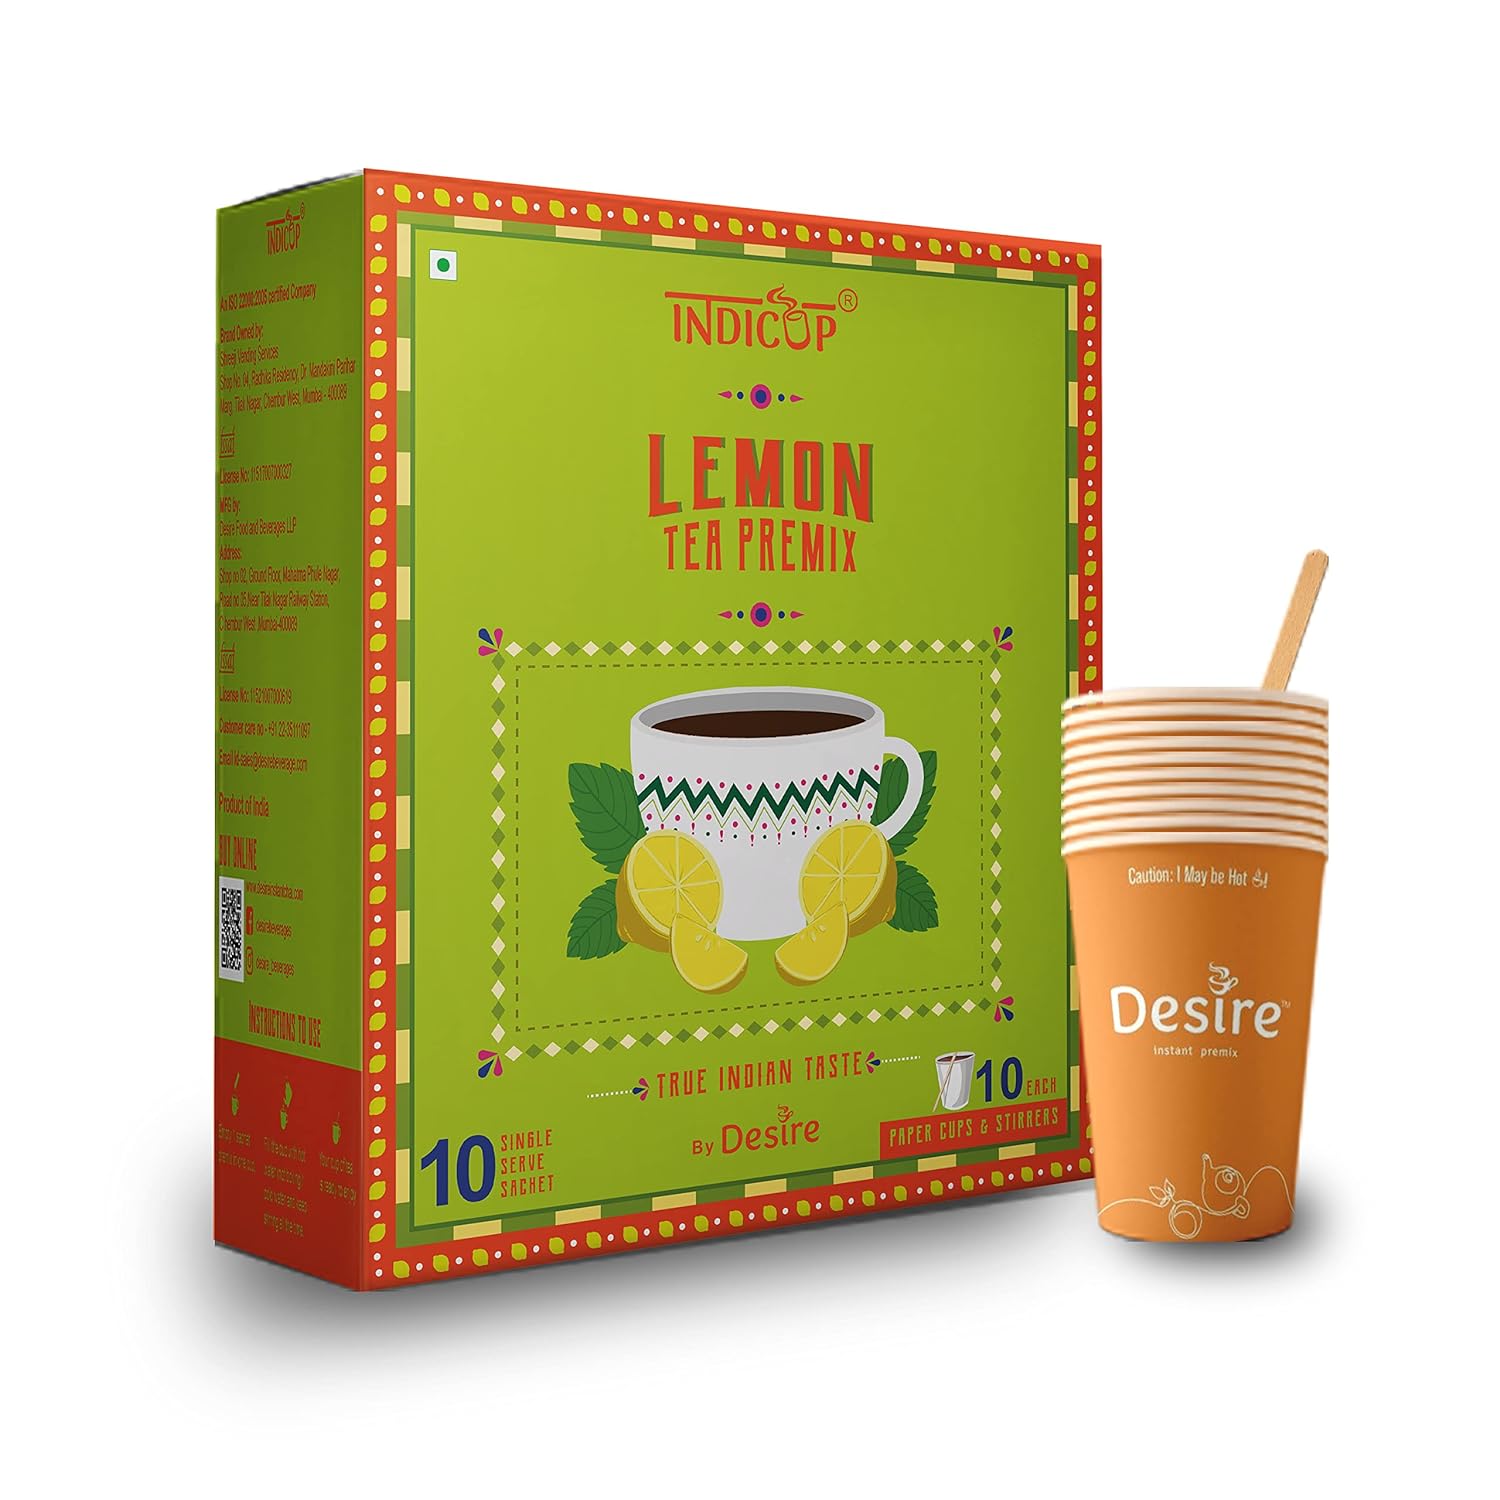 INDICUP Lemon Tea Instant Premix, Pack of 1 - 10 Sachets